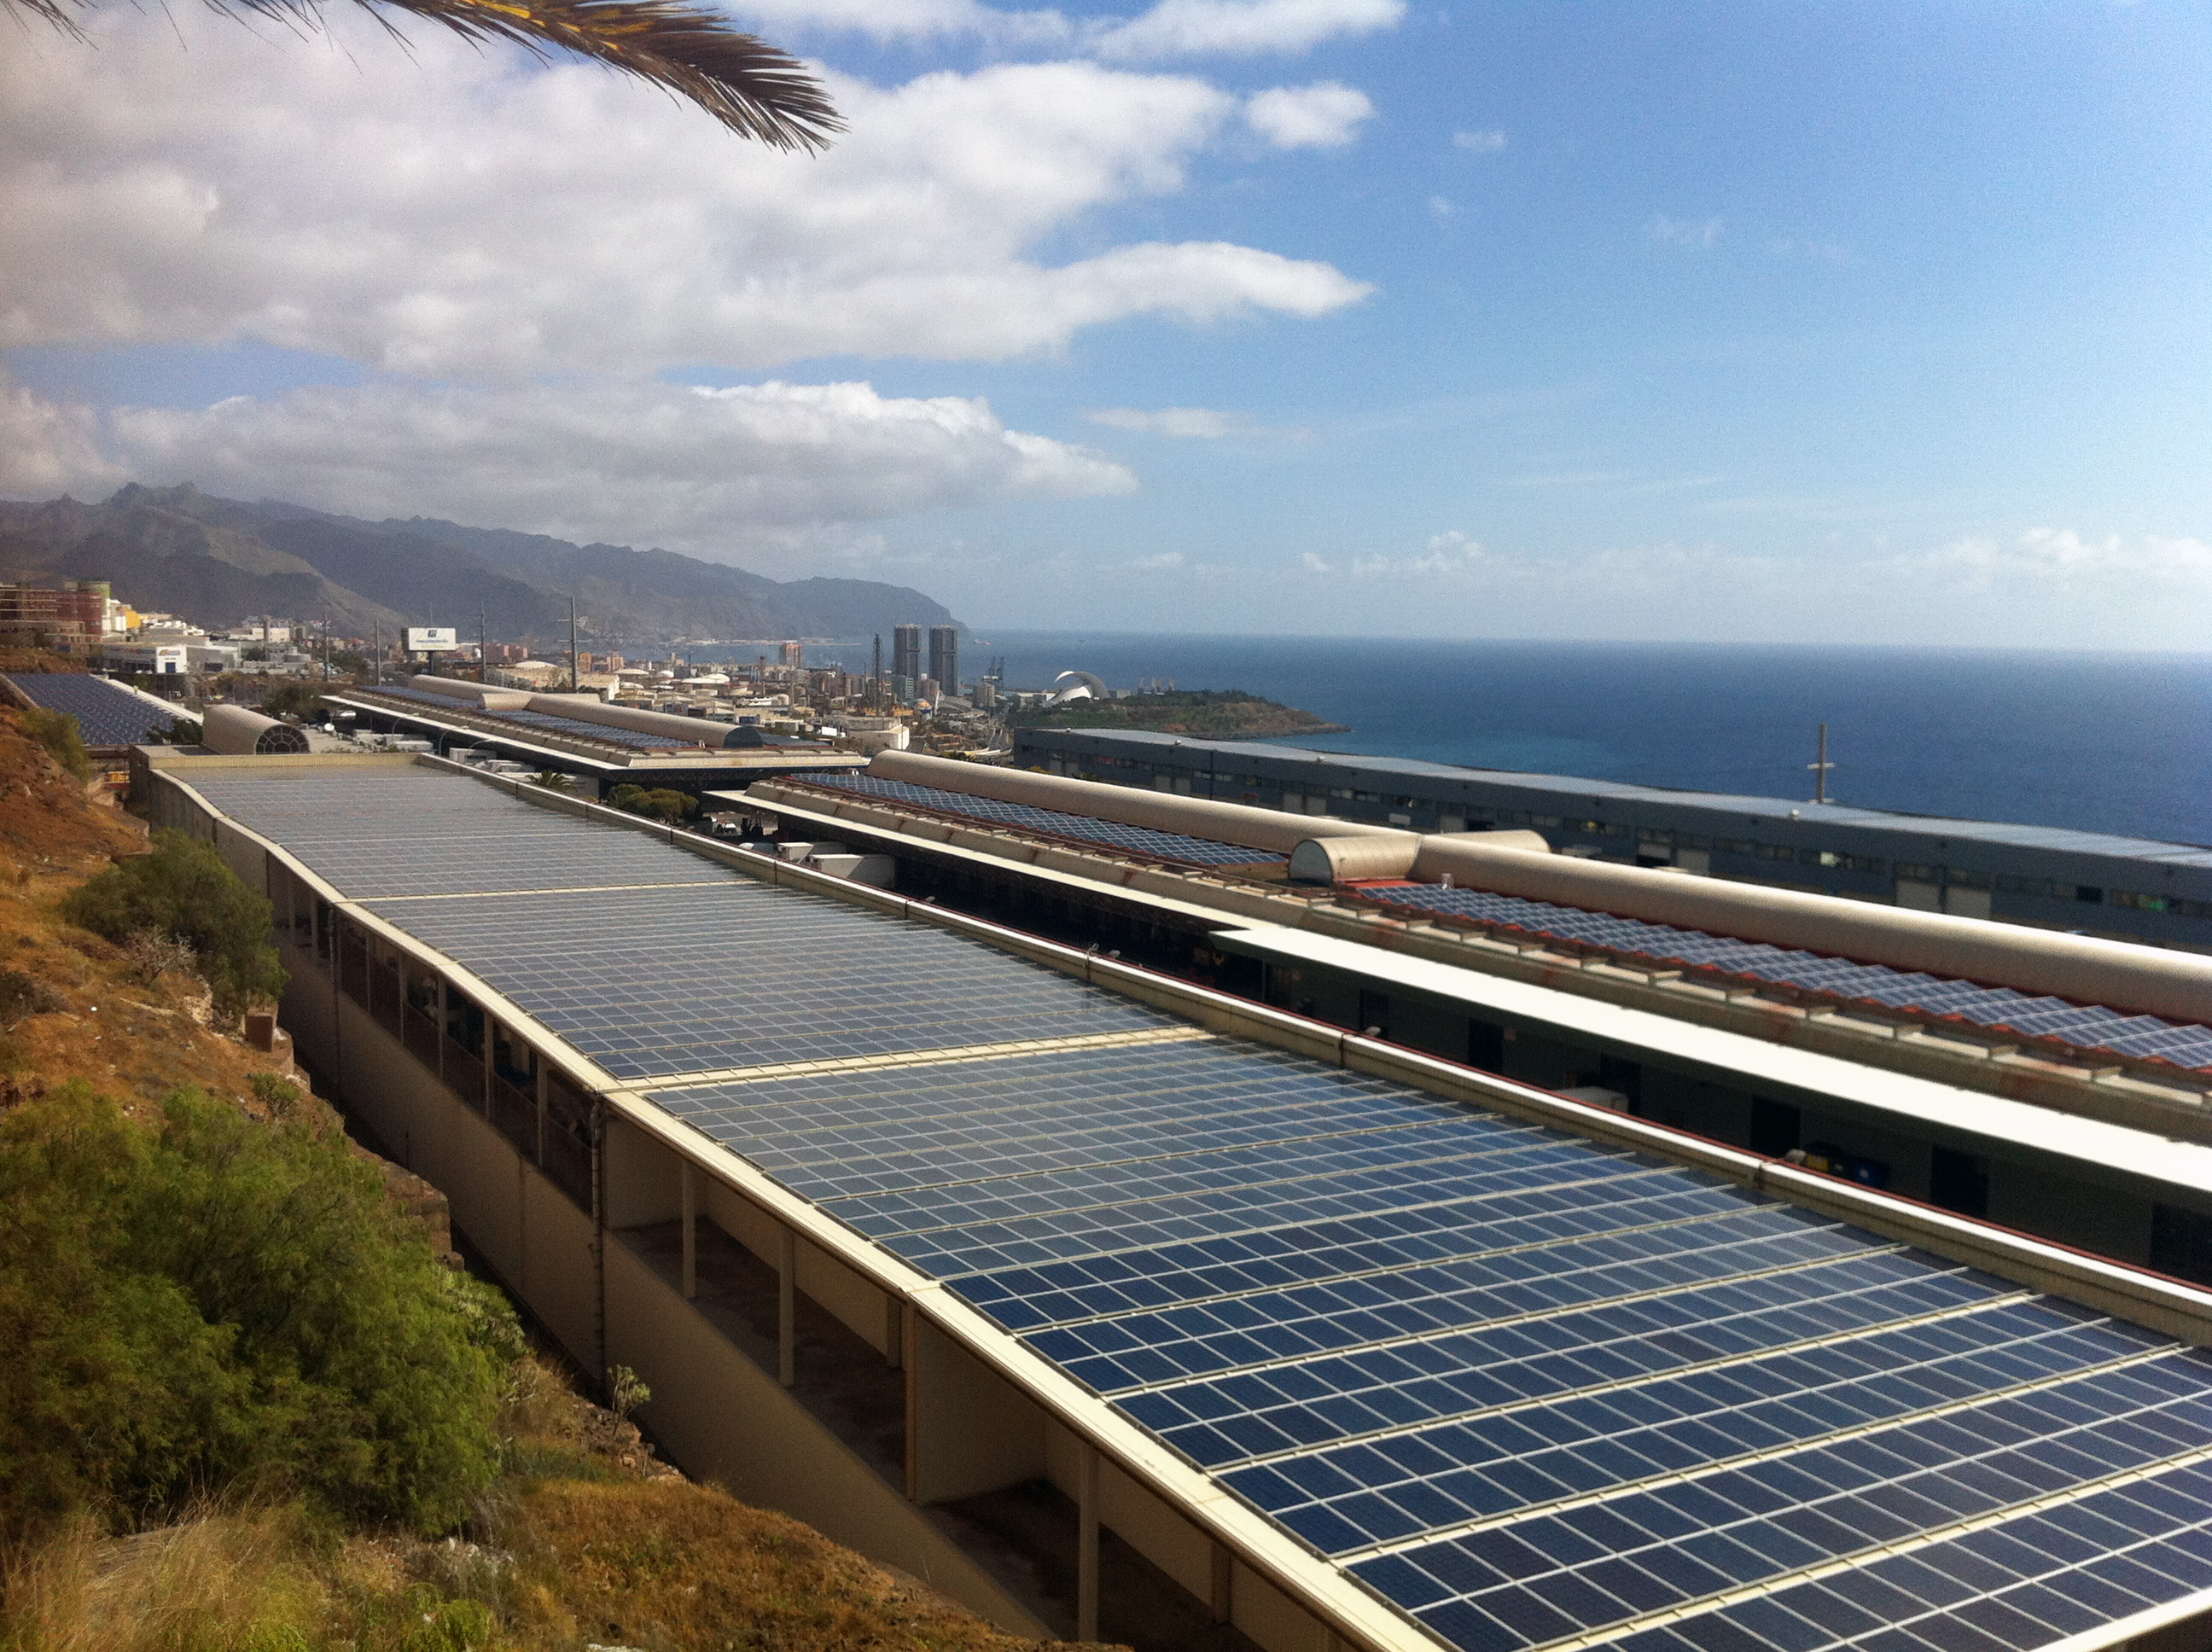 Conergy suministra energía solar fotovoltaica en Canarias